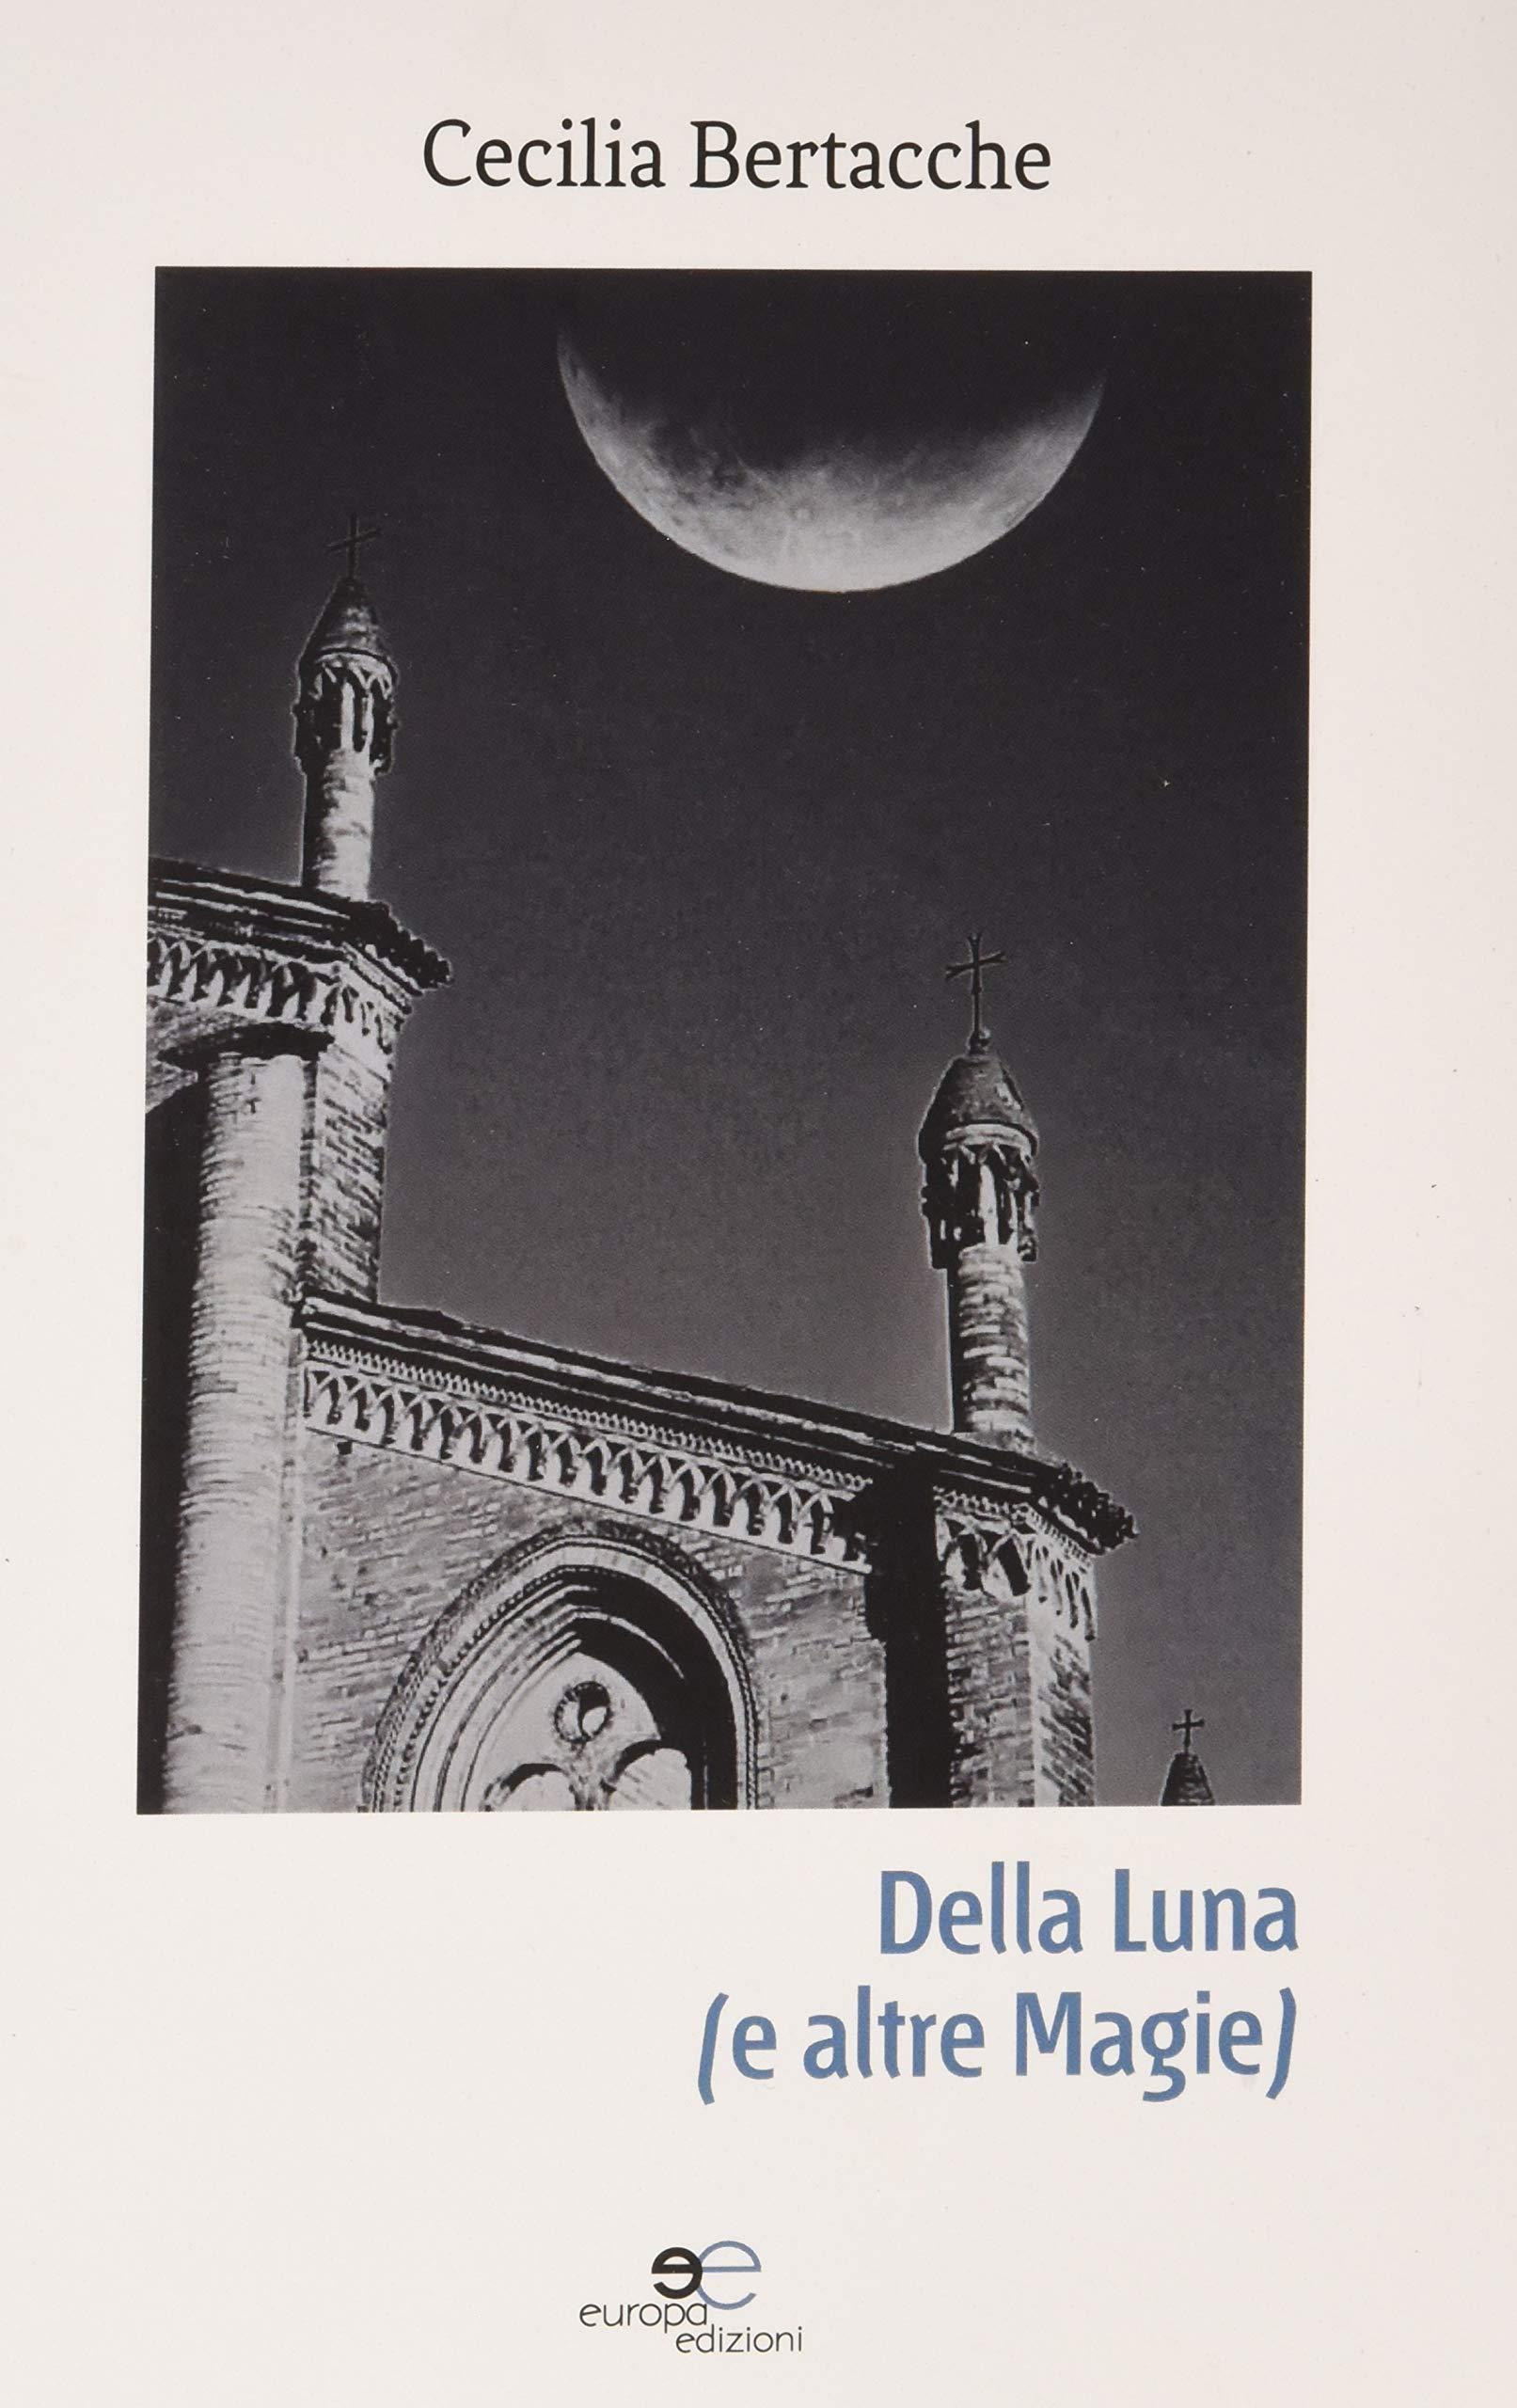 Libro "Della luna" di Cecilia Bertacche